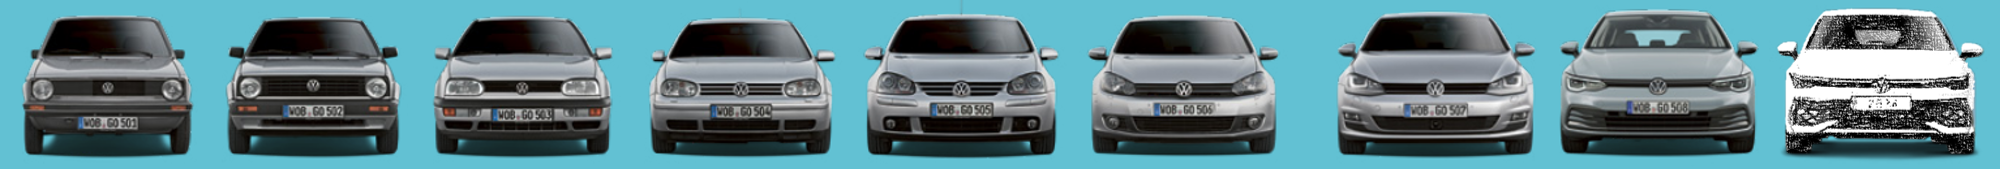 Volkswagen Golf 1 bis 8 | Autohaus Burkard 